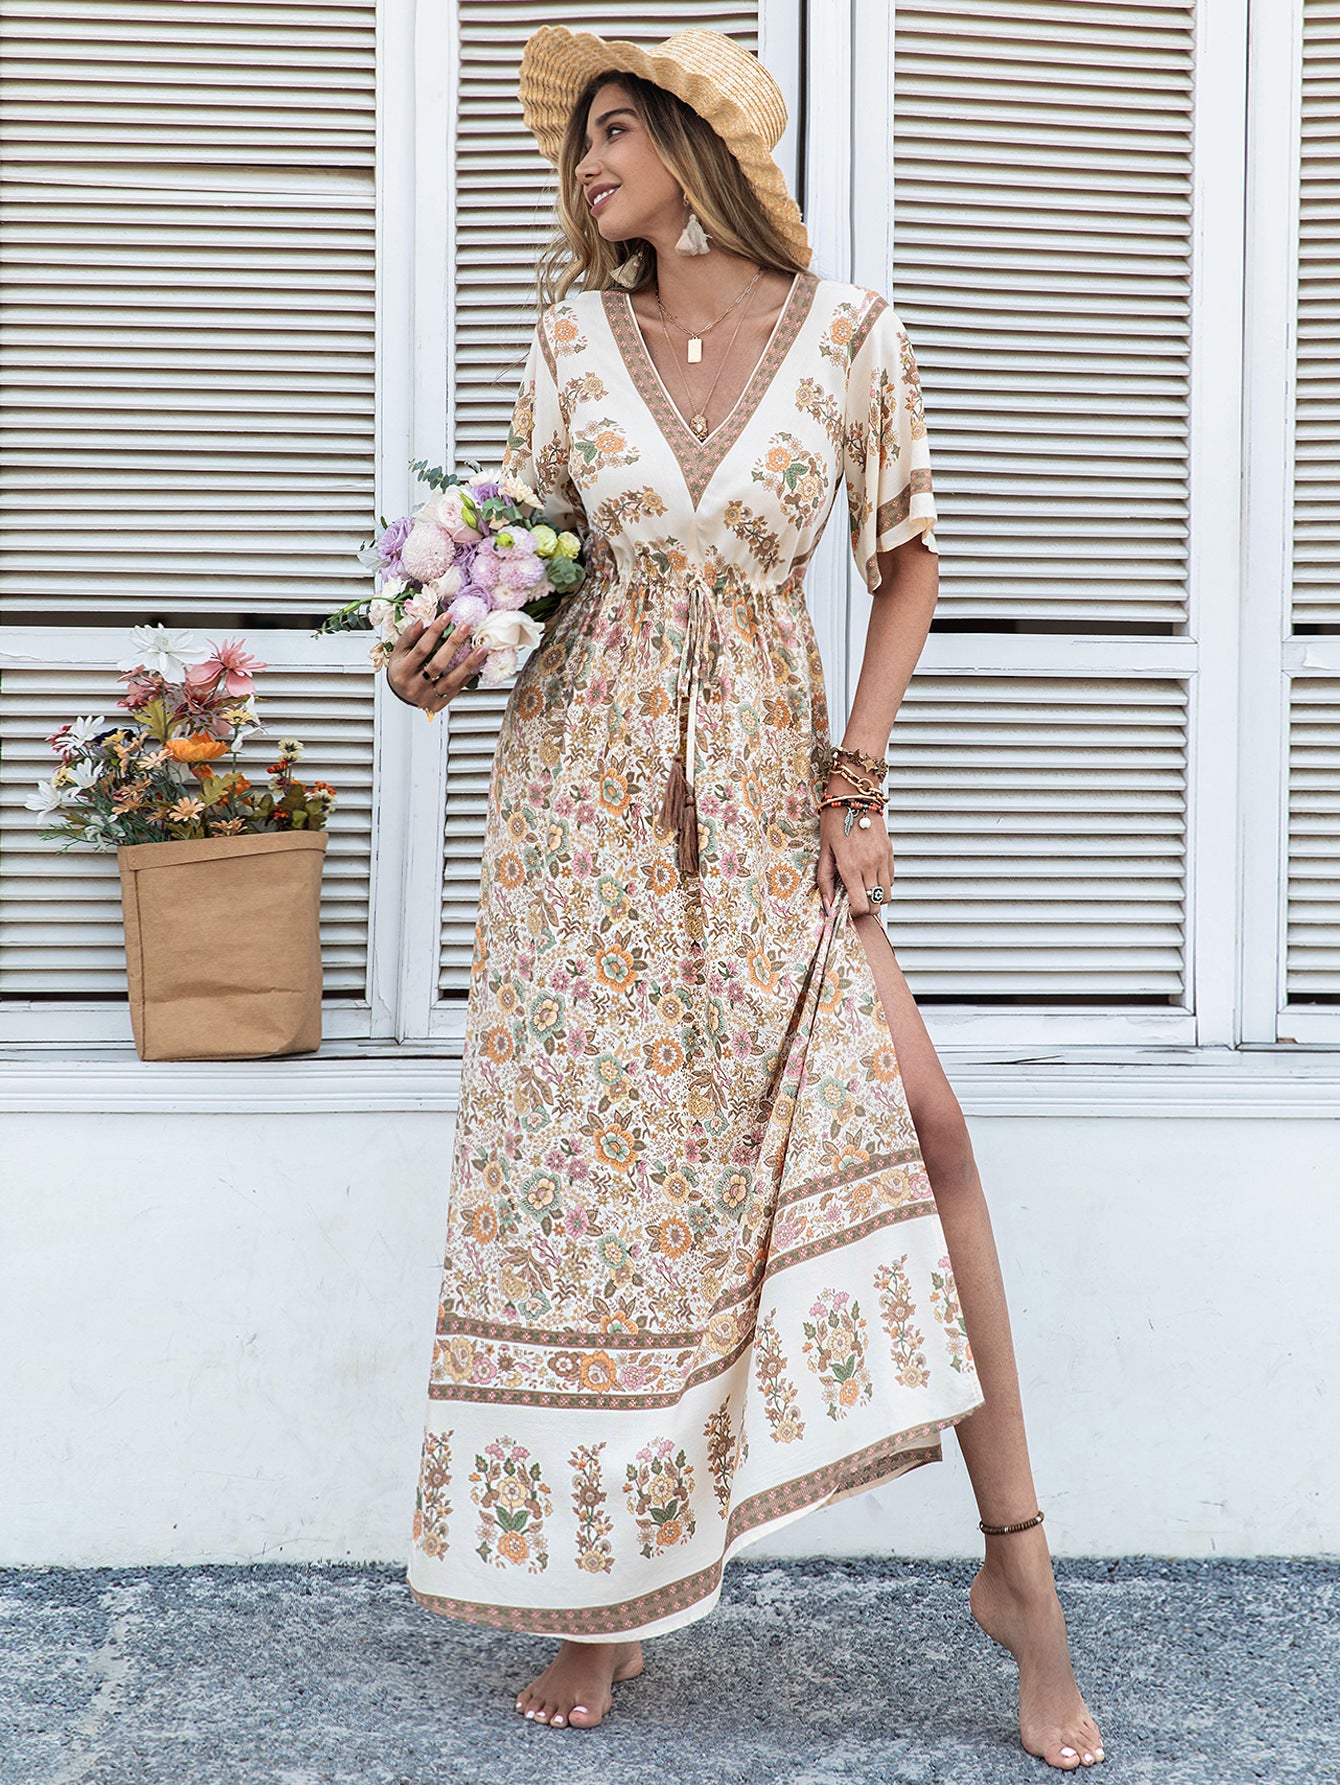 Bohemian Beige Printed Dress Long Tassel Women